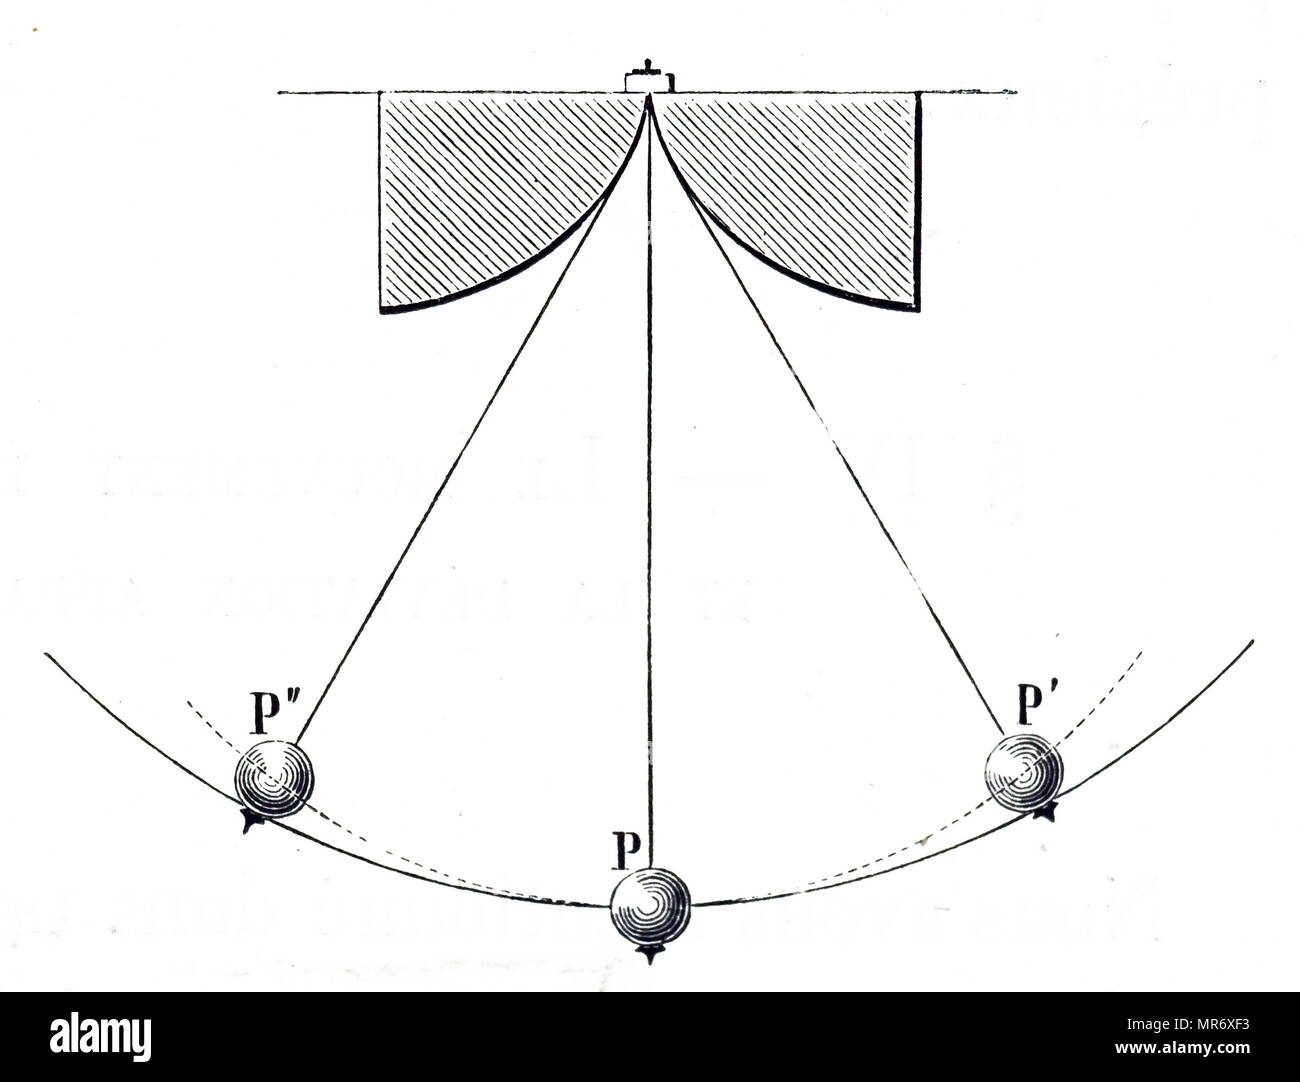 Gravur Darstellung cycloidal Christiaan Huygens' Pendel. Ein Stab von flexiblen Metall mit Bob, P, die beschreibt ein Die cycloidal Arc. Die Stange aufgehängt zwischen zwei festen Wangen in Form von cycloidal Bögen an die tangential zum Ausgangspunkt. Wie die Rute schwingt, es verbiegt und ruht auf jedem Bogen durch die Umdrehung, so dass die Verringerung der Länge des Pendels in Abhängigkeit von Schwingung. Christiaan Huygens (1629-1695) ein niederländischer Physiker, Mathematiker, Astronom und Erfinder. Vom 19. Jahrhundert Stockfoto